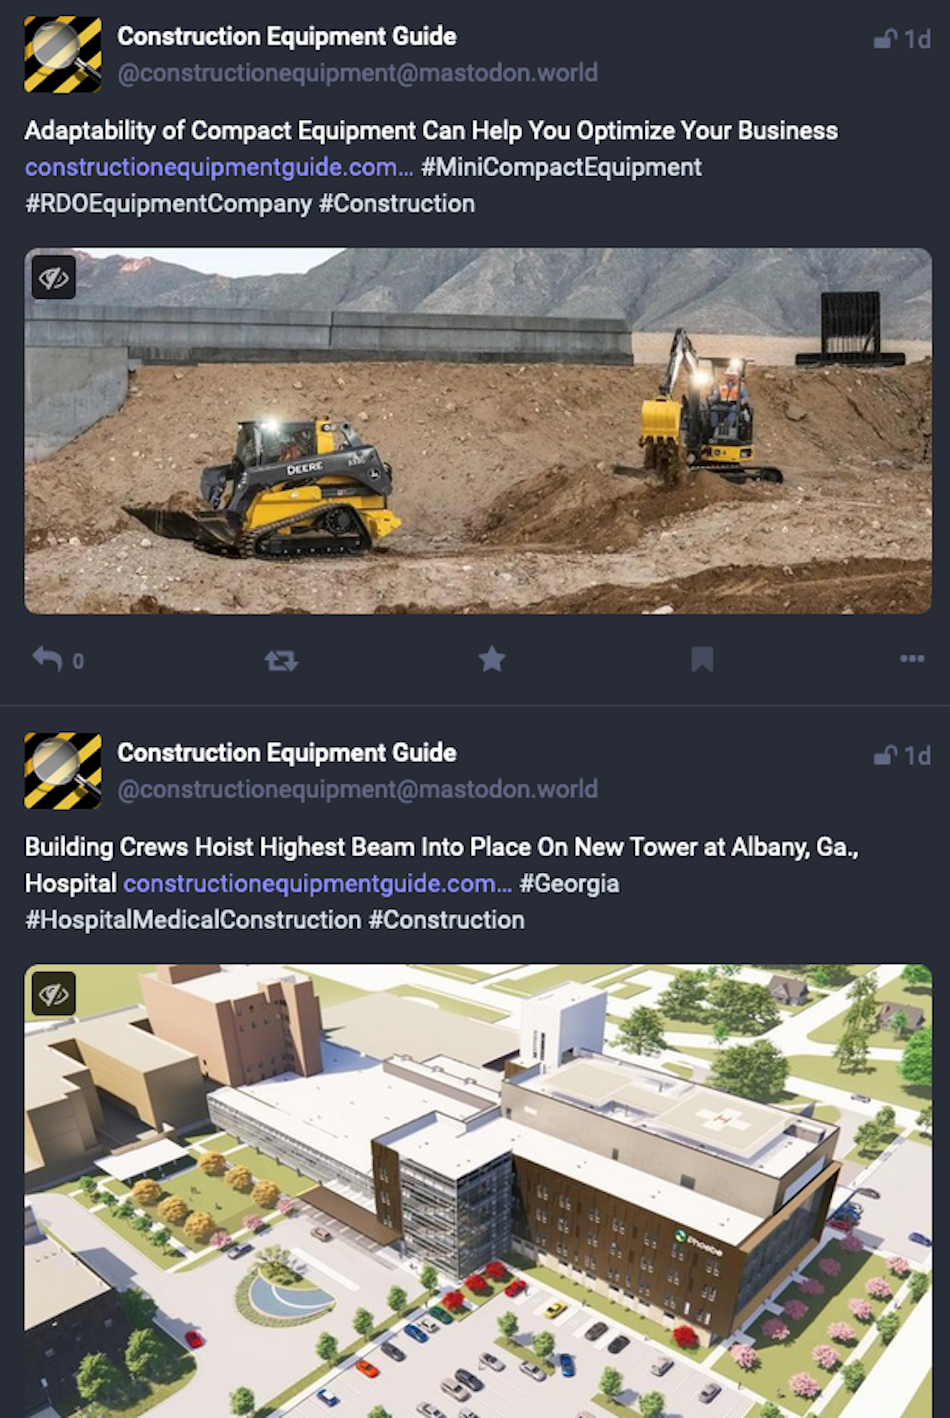 Dwa posty na platformie mediów społecznościowych Mastodon pokazują portal z wiadomościami branżowymi Construction Equipment Guide promujący wiadomości z ich witryny.